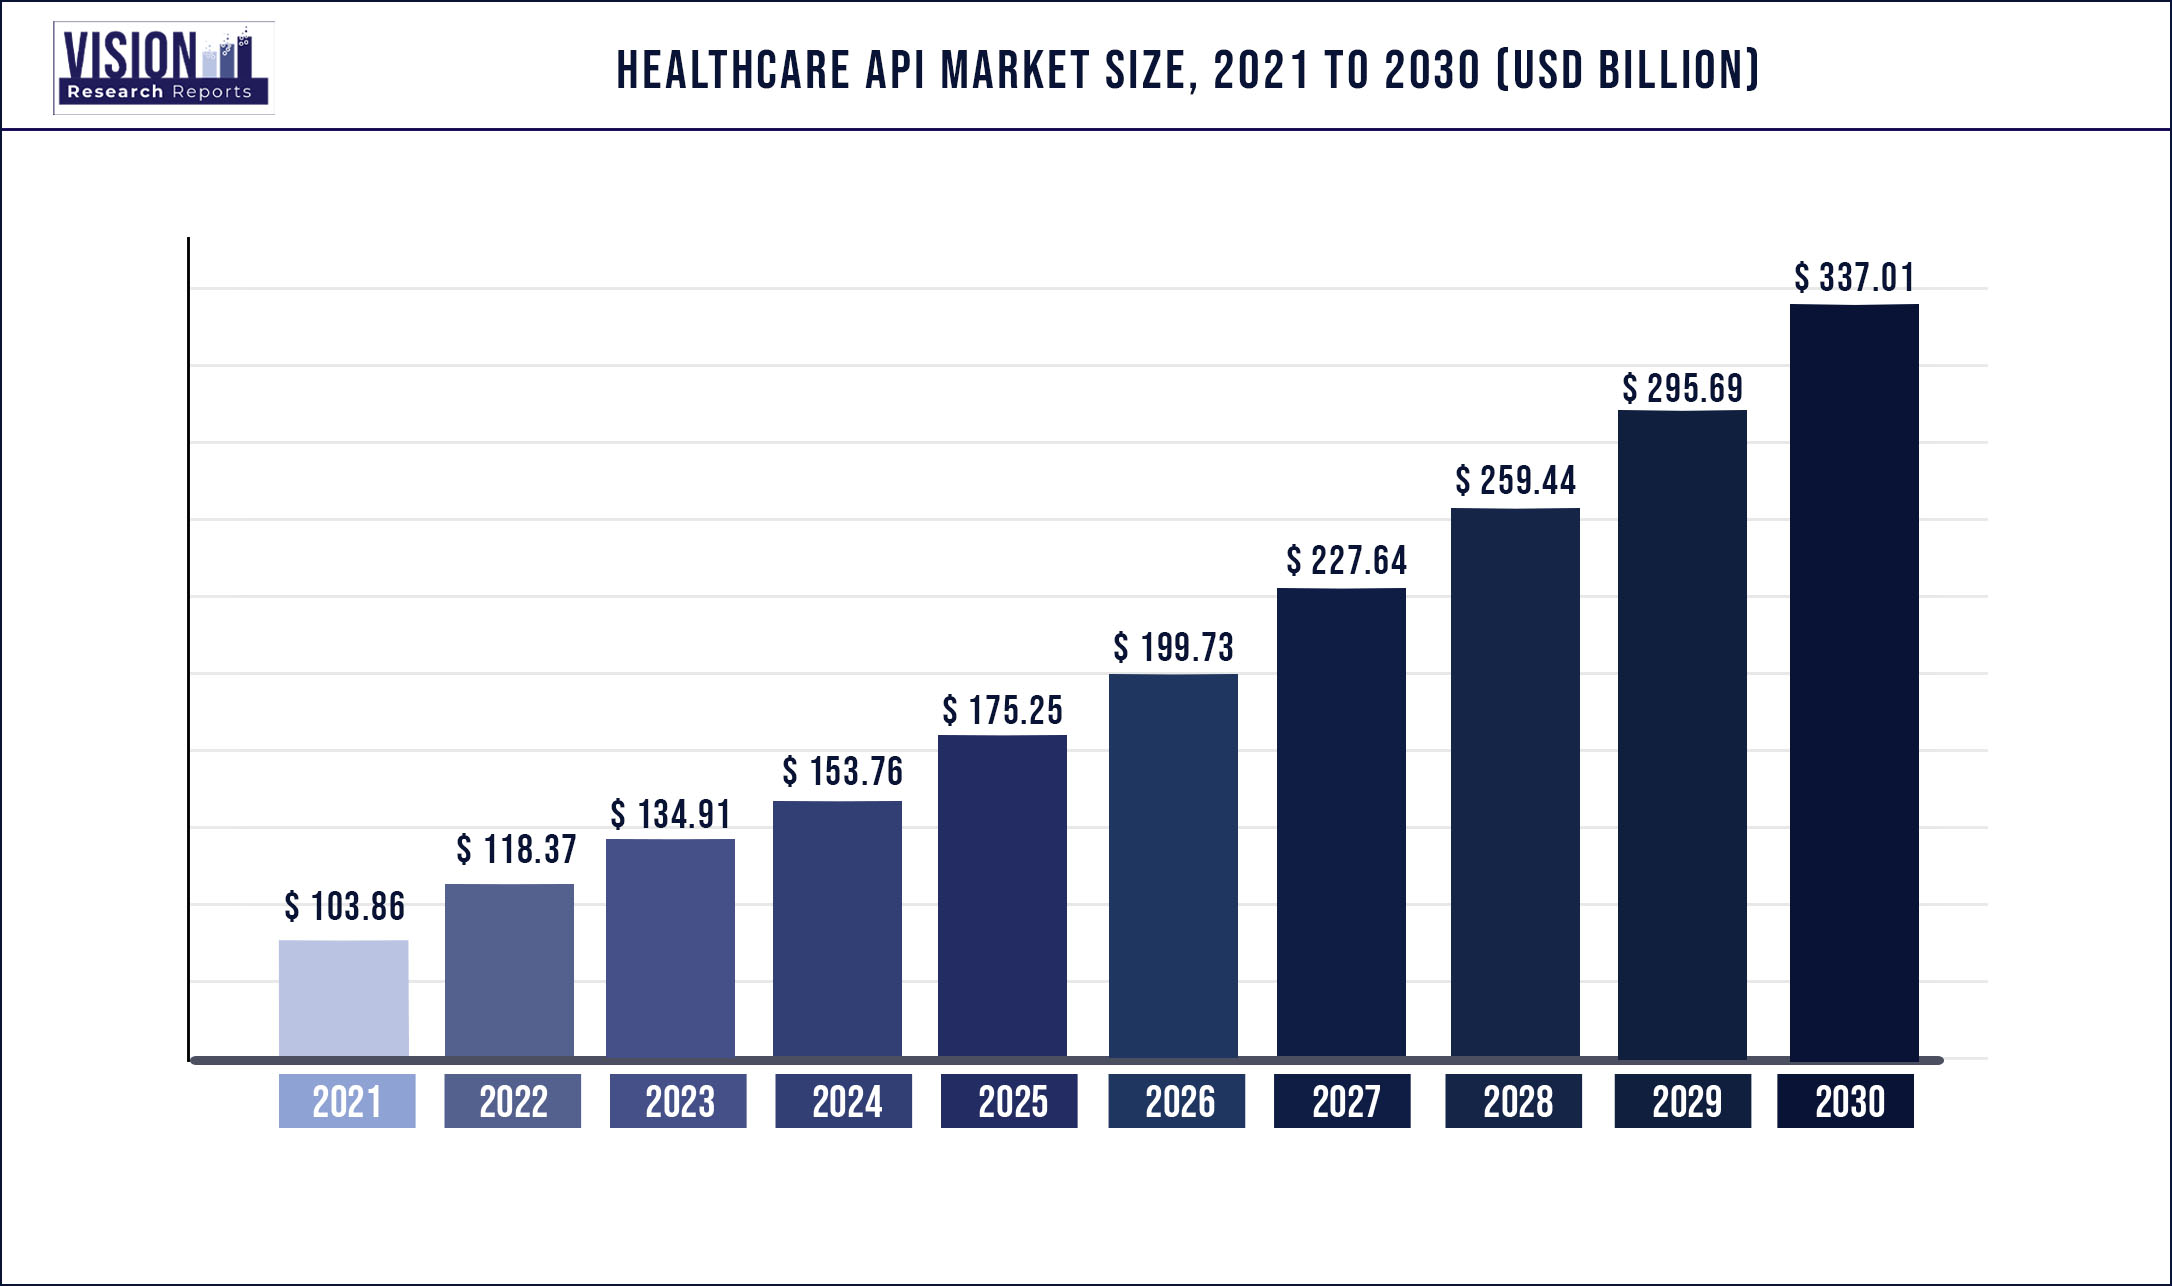 Healthcare API Market Size 2021 to 2030